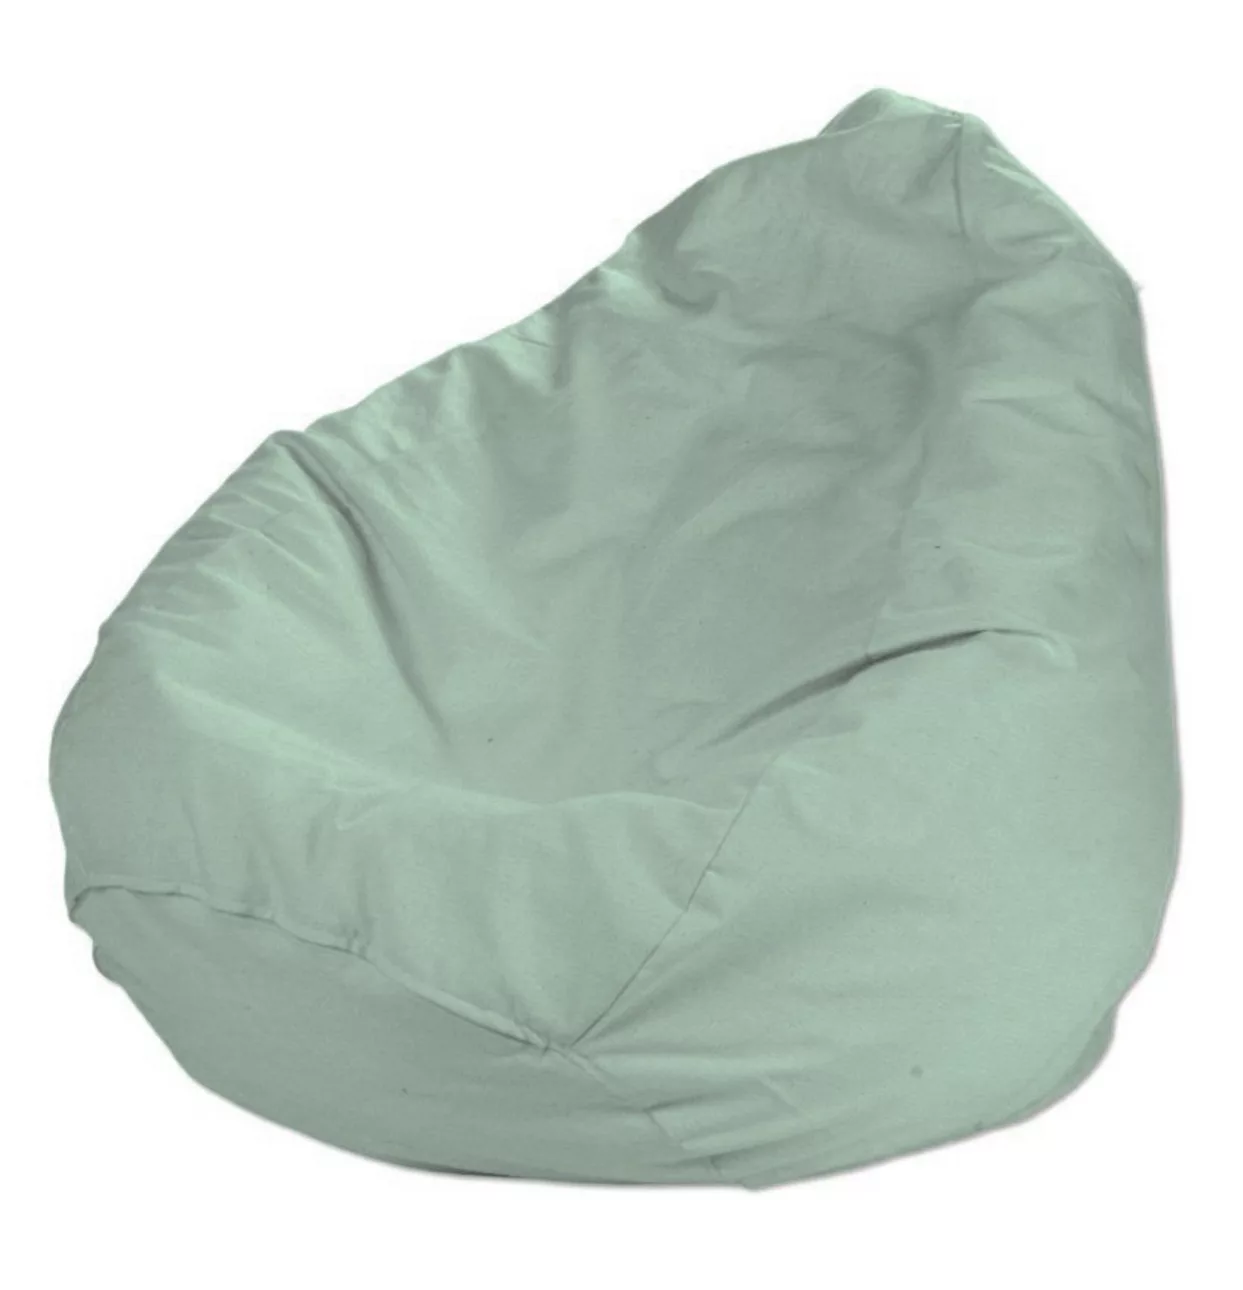 Bezug für Sitzsack, grün, Bezug für Sitzsack Ø80 x 115 cm, Loneta (133-61) günstig online kaufen